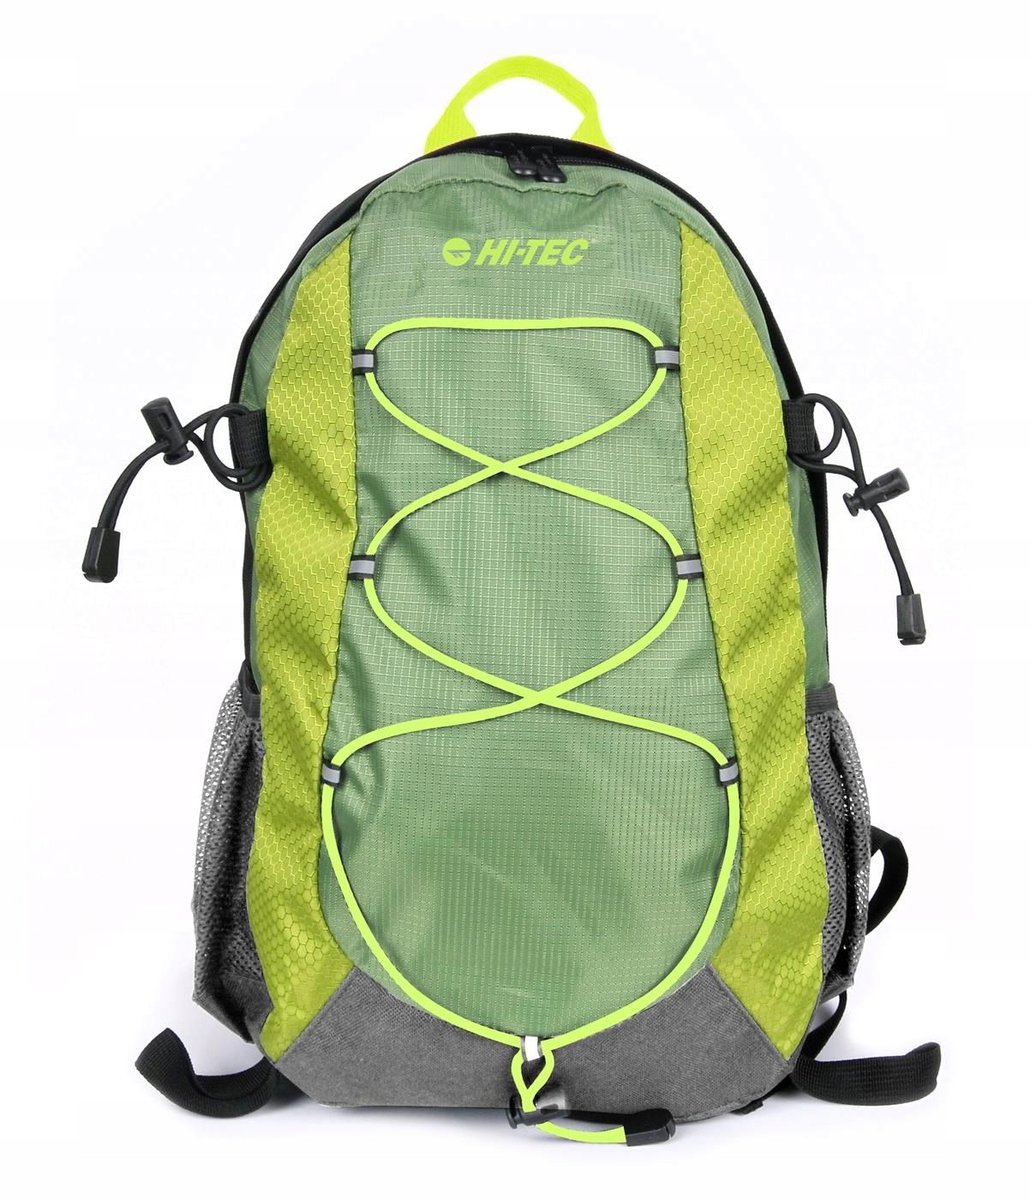 Plecak outdoor wycieczkowy Pek 18l Green/apple